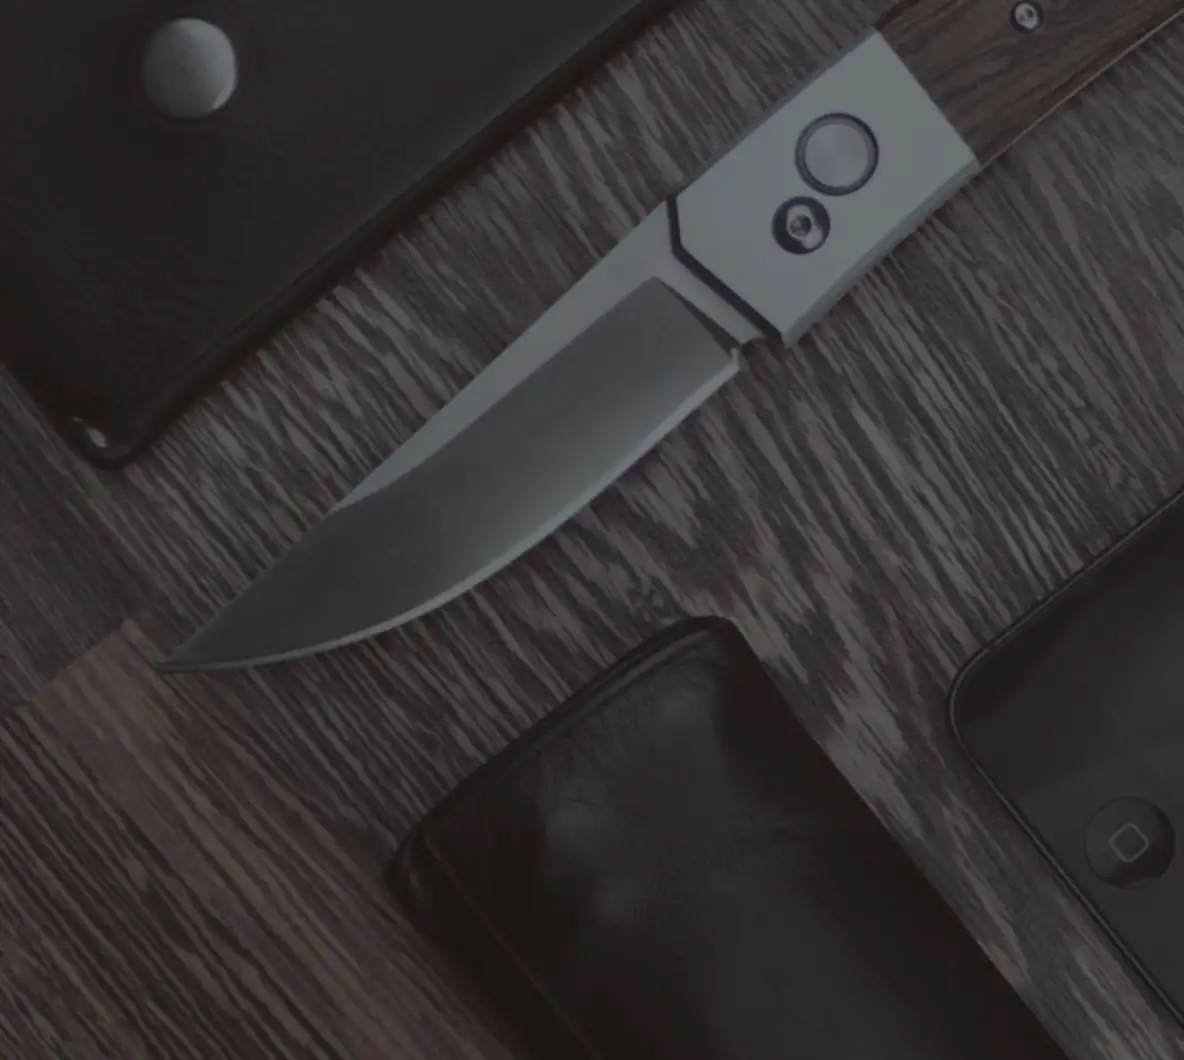 Knifemaking background